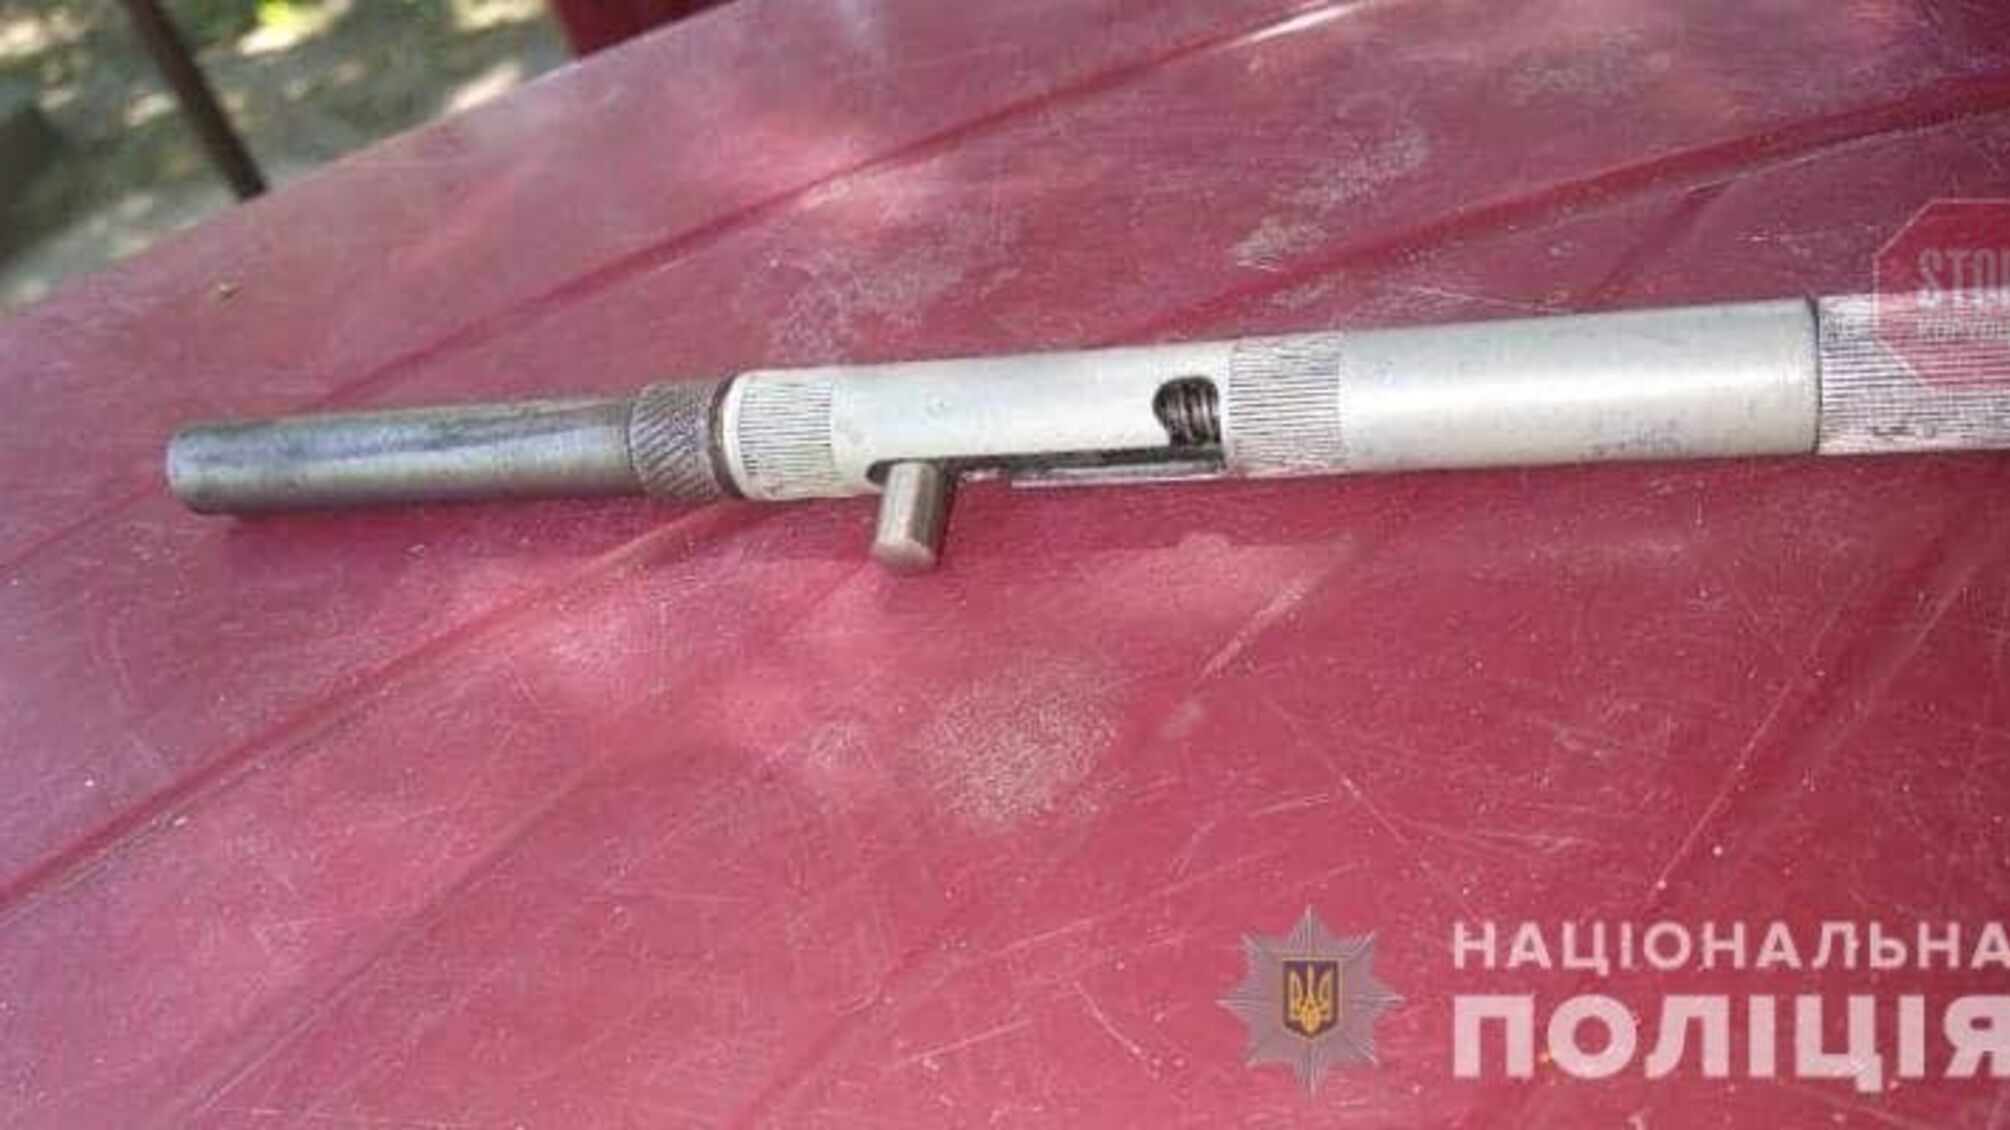 В Луганской области 11-летний мальчик выстрелил себе в живот (фото)